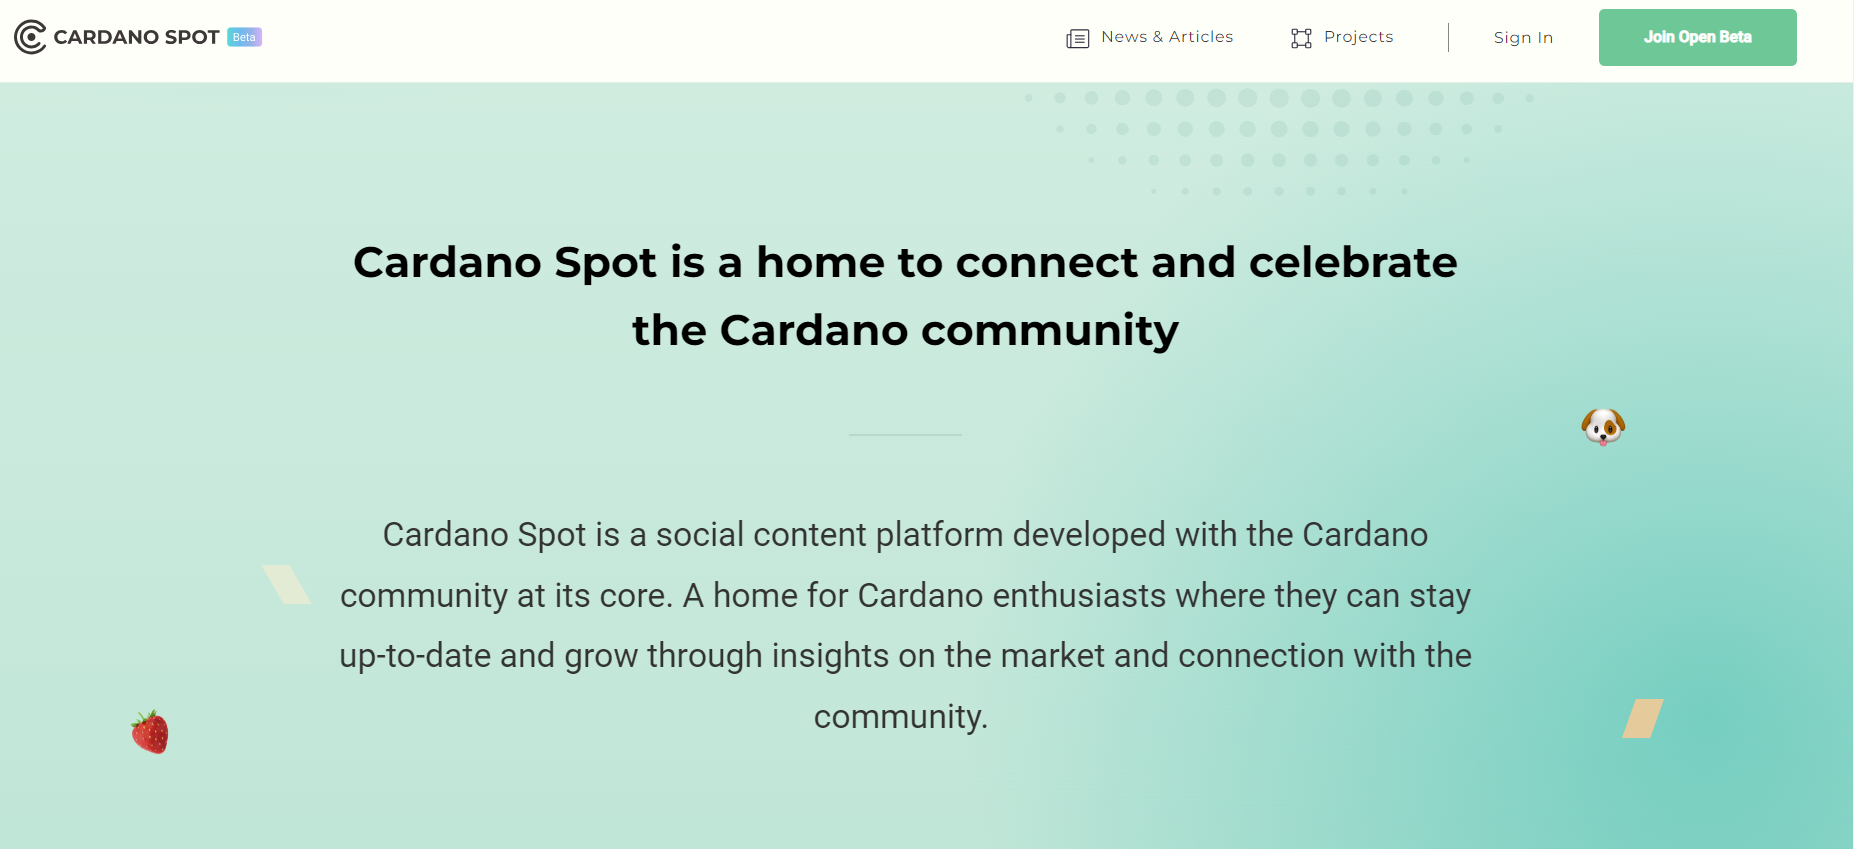 Cardano Spot Meluncurkan Fitur-Fitur Baru untuk Memperkuat Komunitas Blockchain